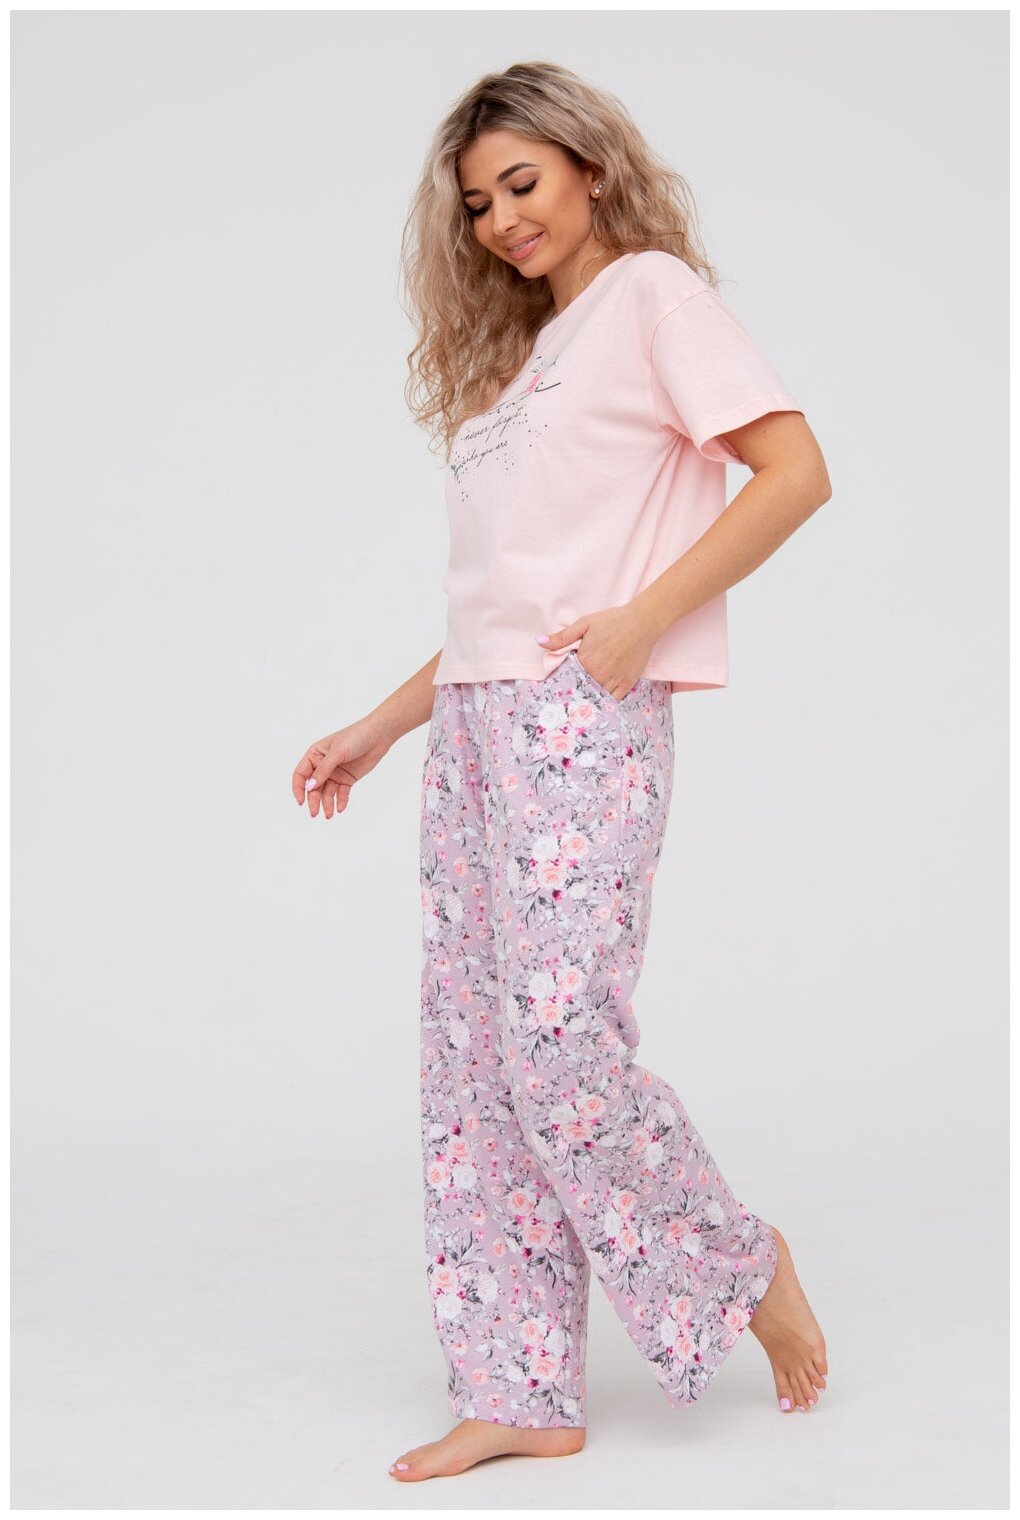 Пижама DIANIDA М-799 размеры 44-54 (50, Розовый) - фотография № 4